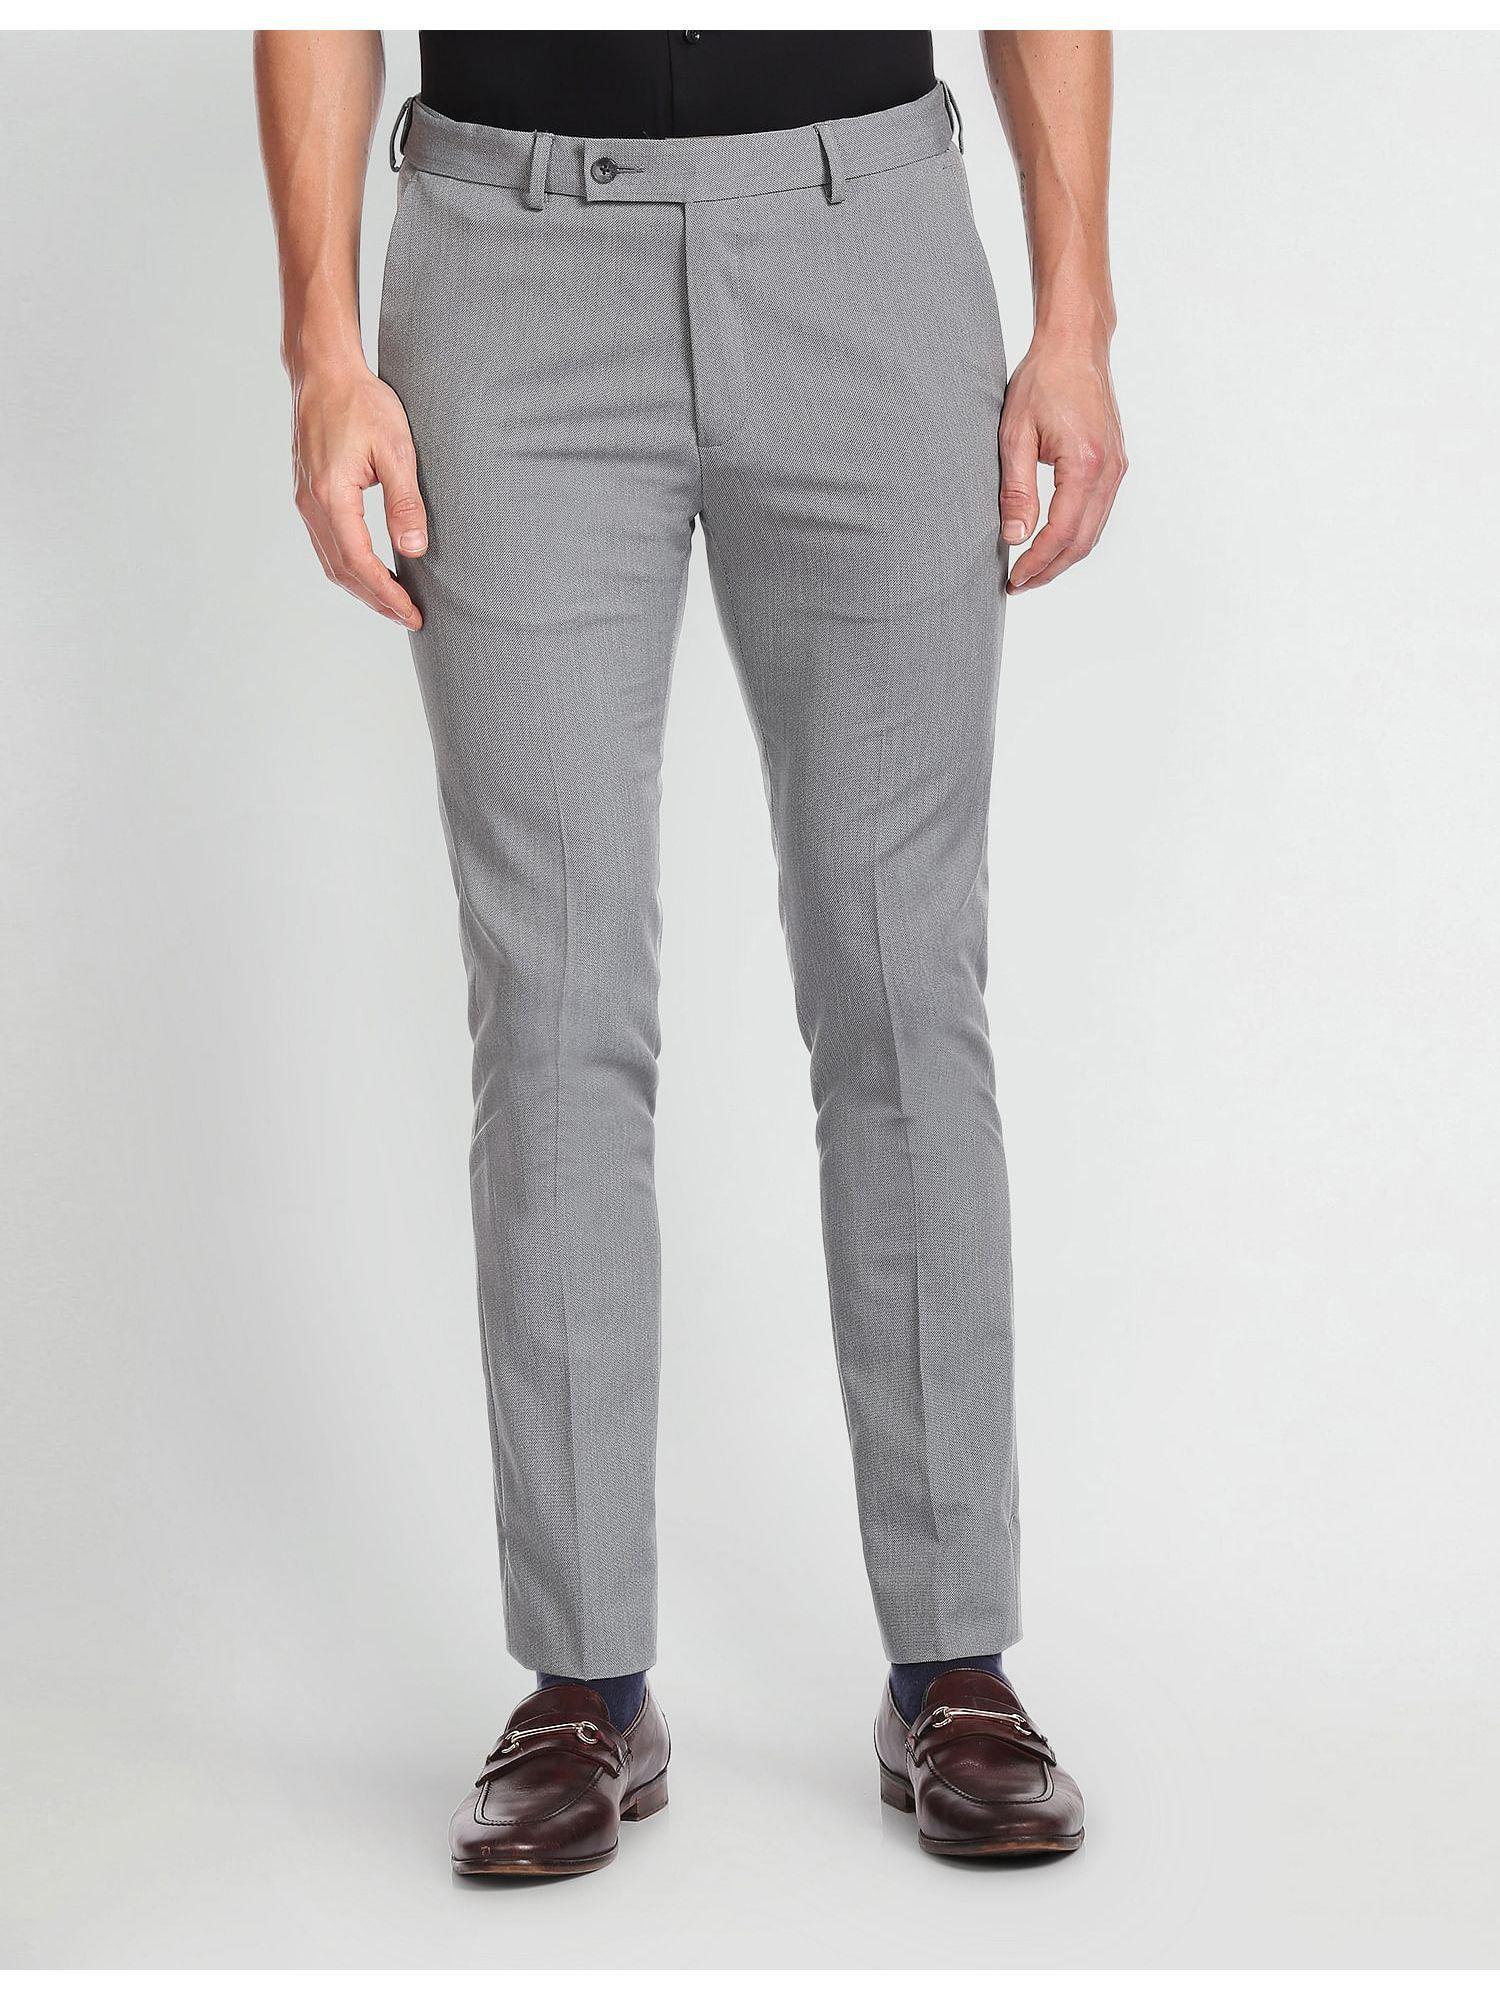 autoflex-dobby-formal-grey-trousers